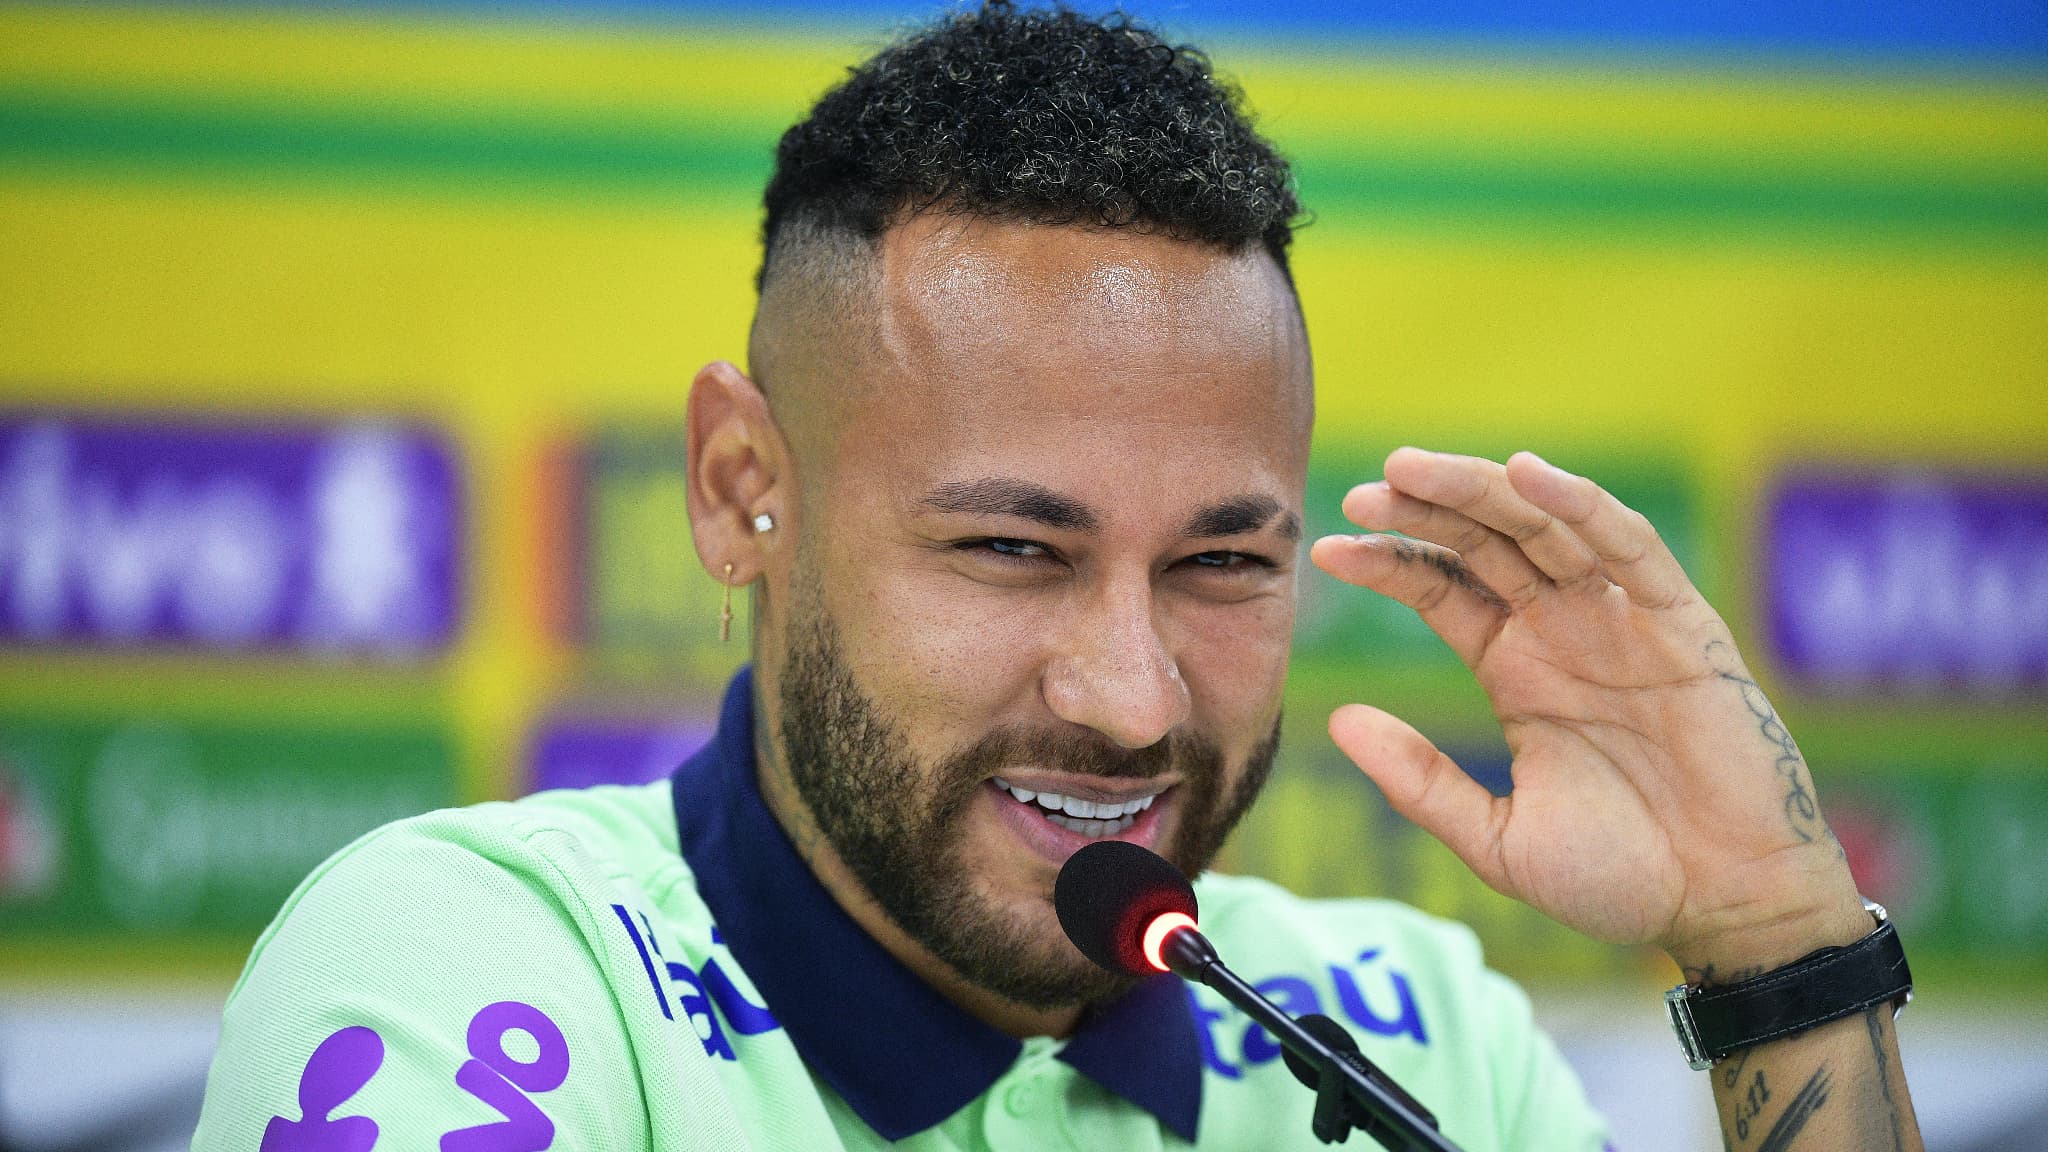 “Possível que o campeonato saudita seja melhor que a Ligue 1”, o grande desarme de Neymar à França